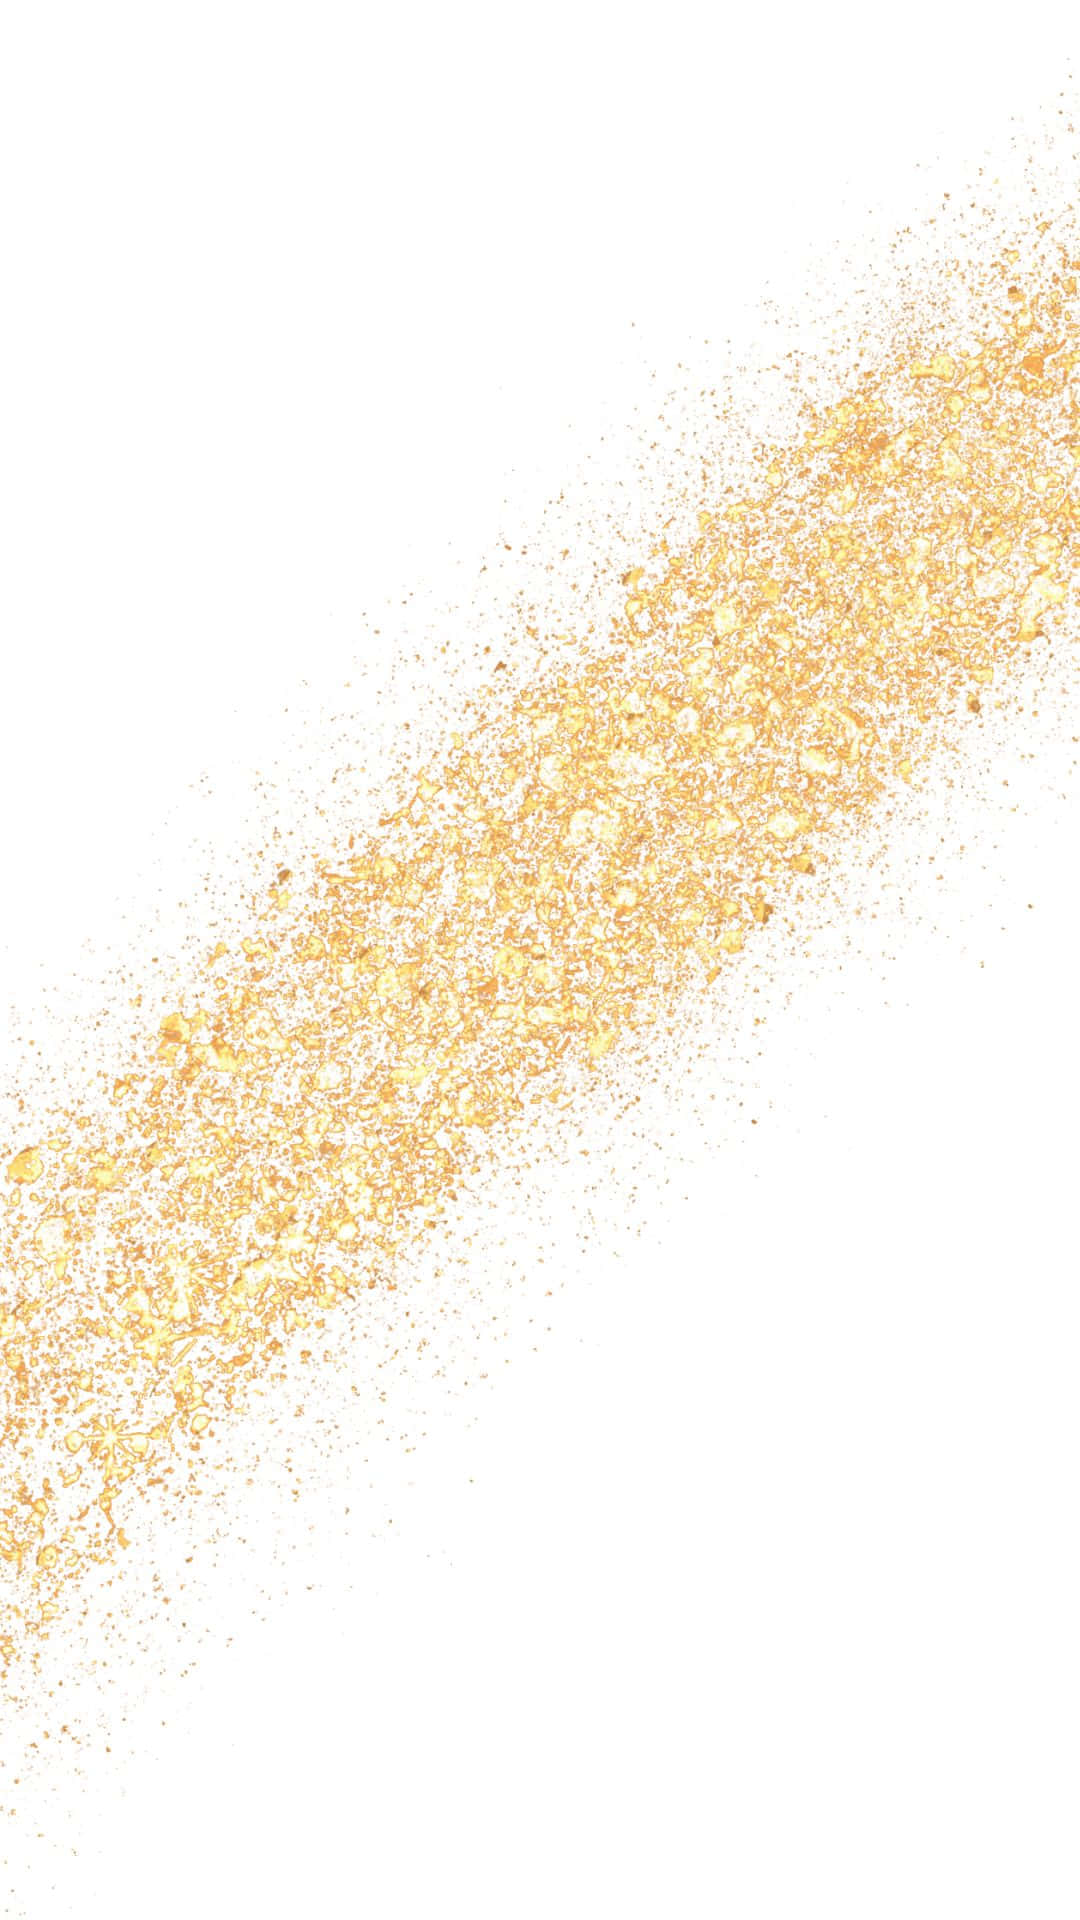 Goldenerglitzer-spritzer Auf Weißem Hintergrund Wallpaper